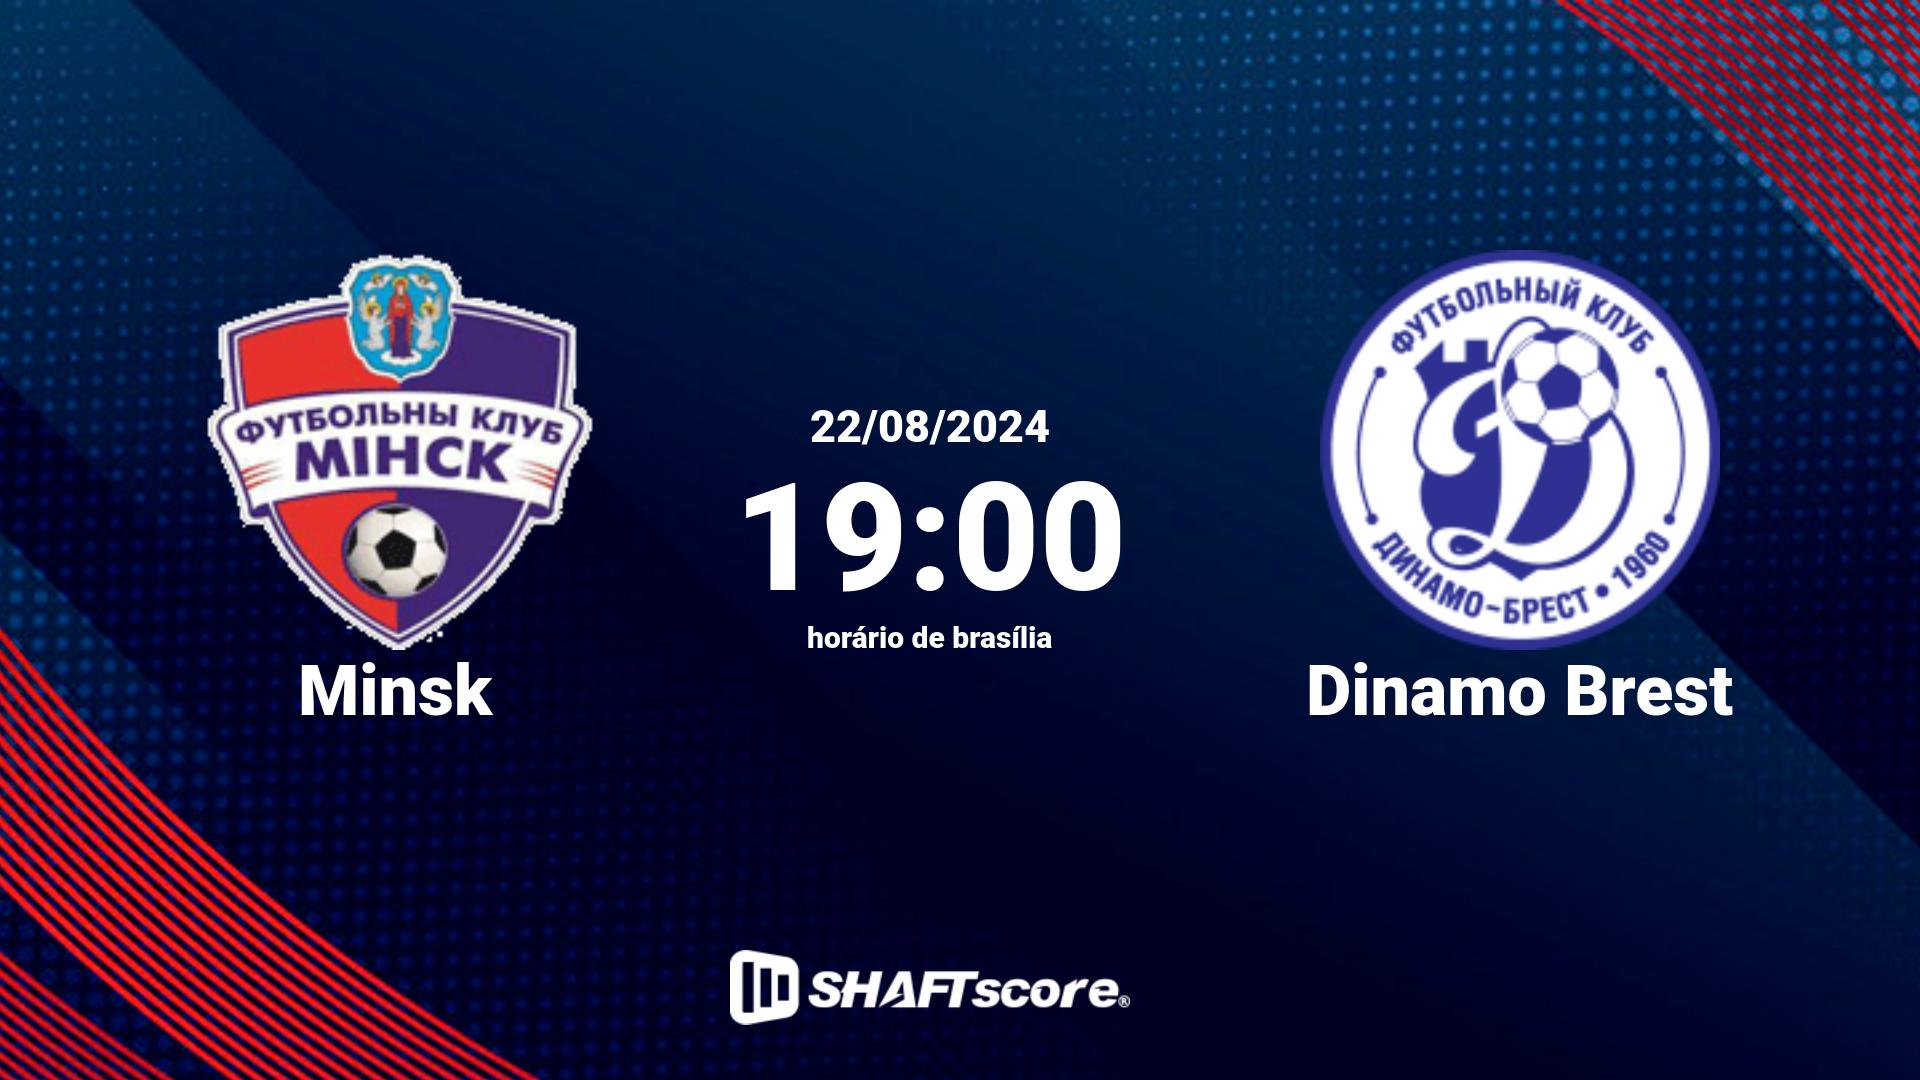 Estatísticas do jogo Minsk vs Dinamo Brest 22.08 19:00